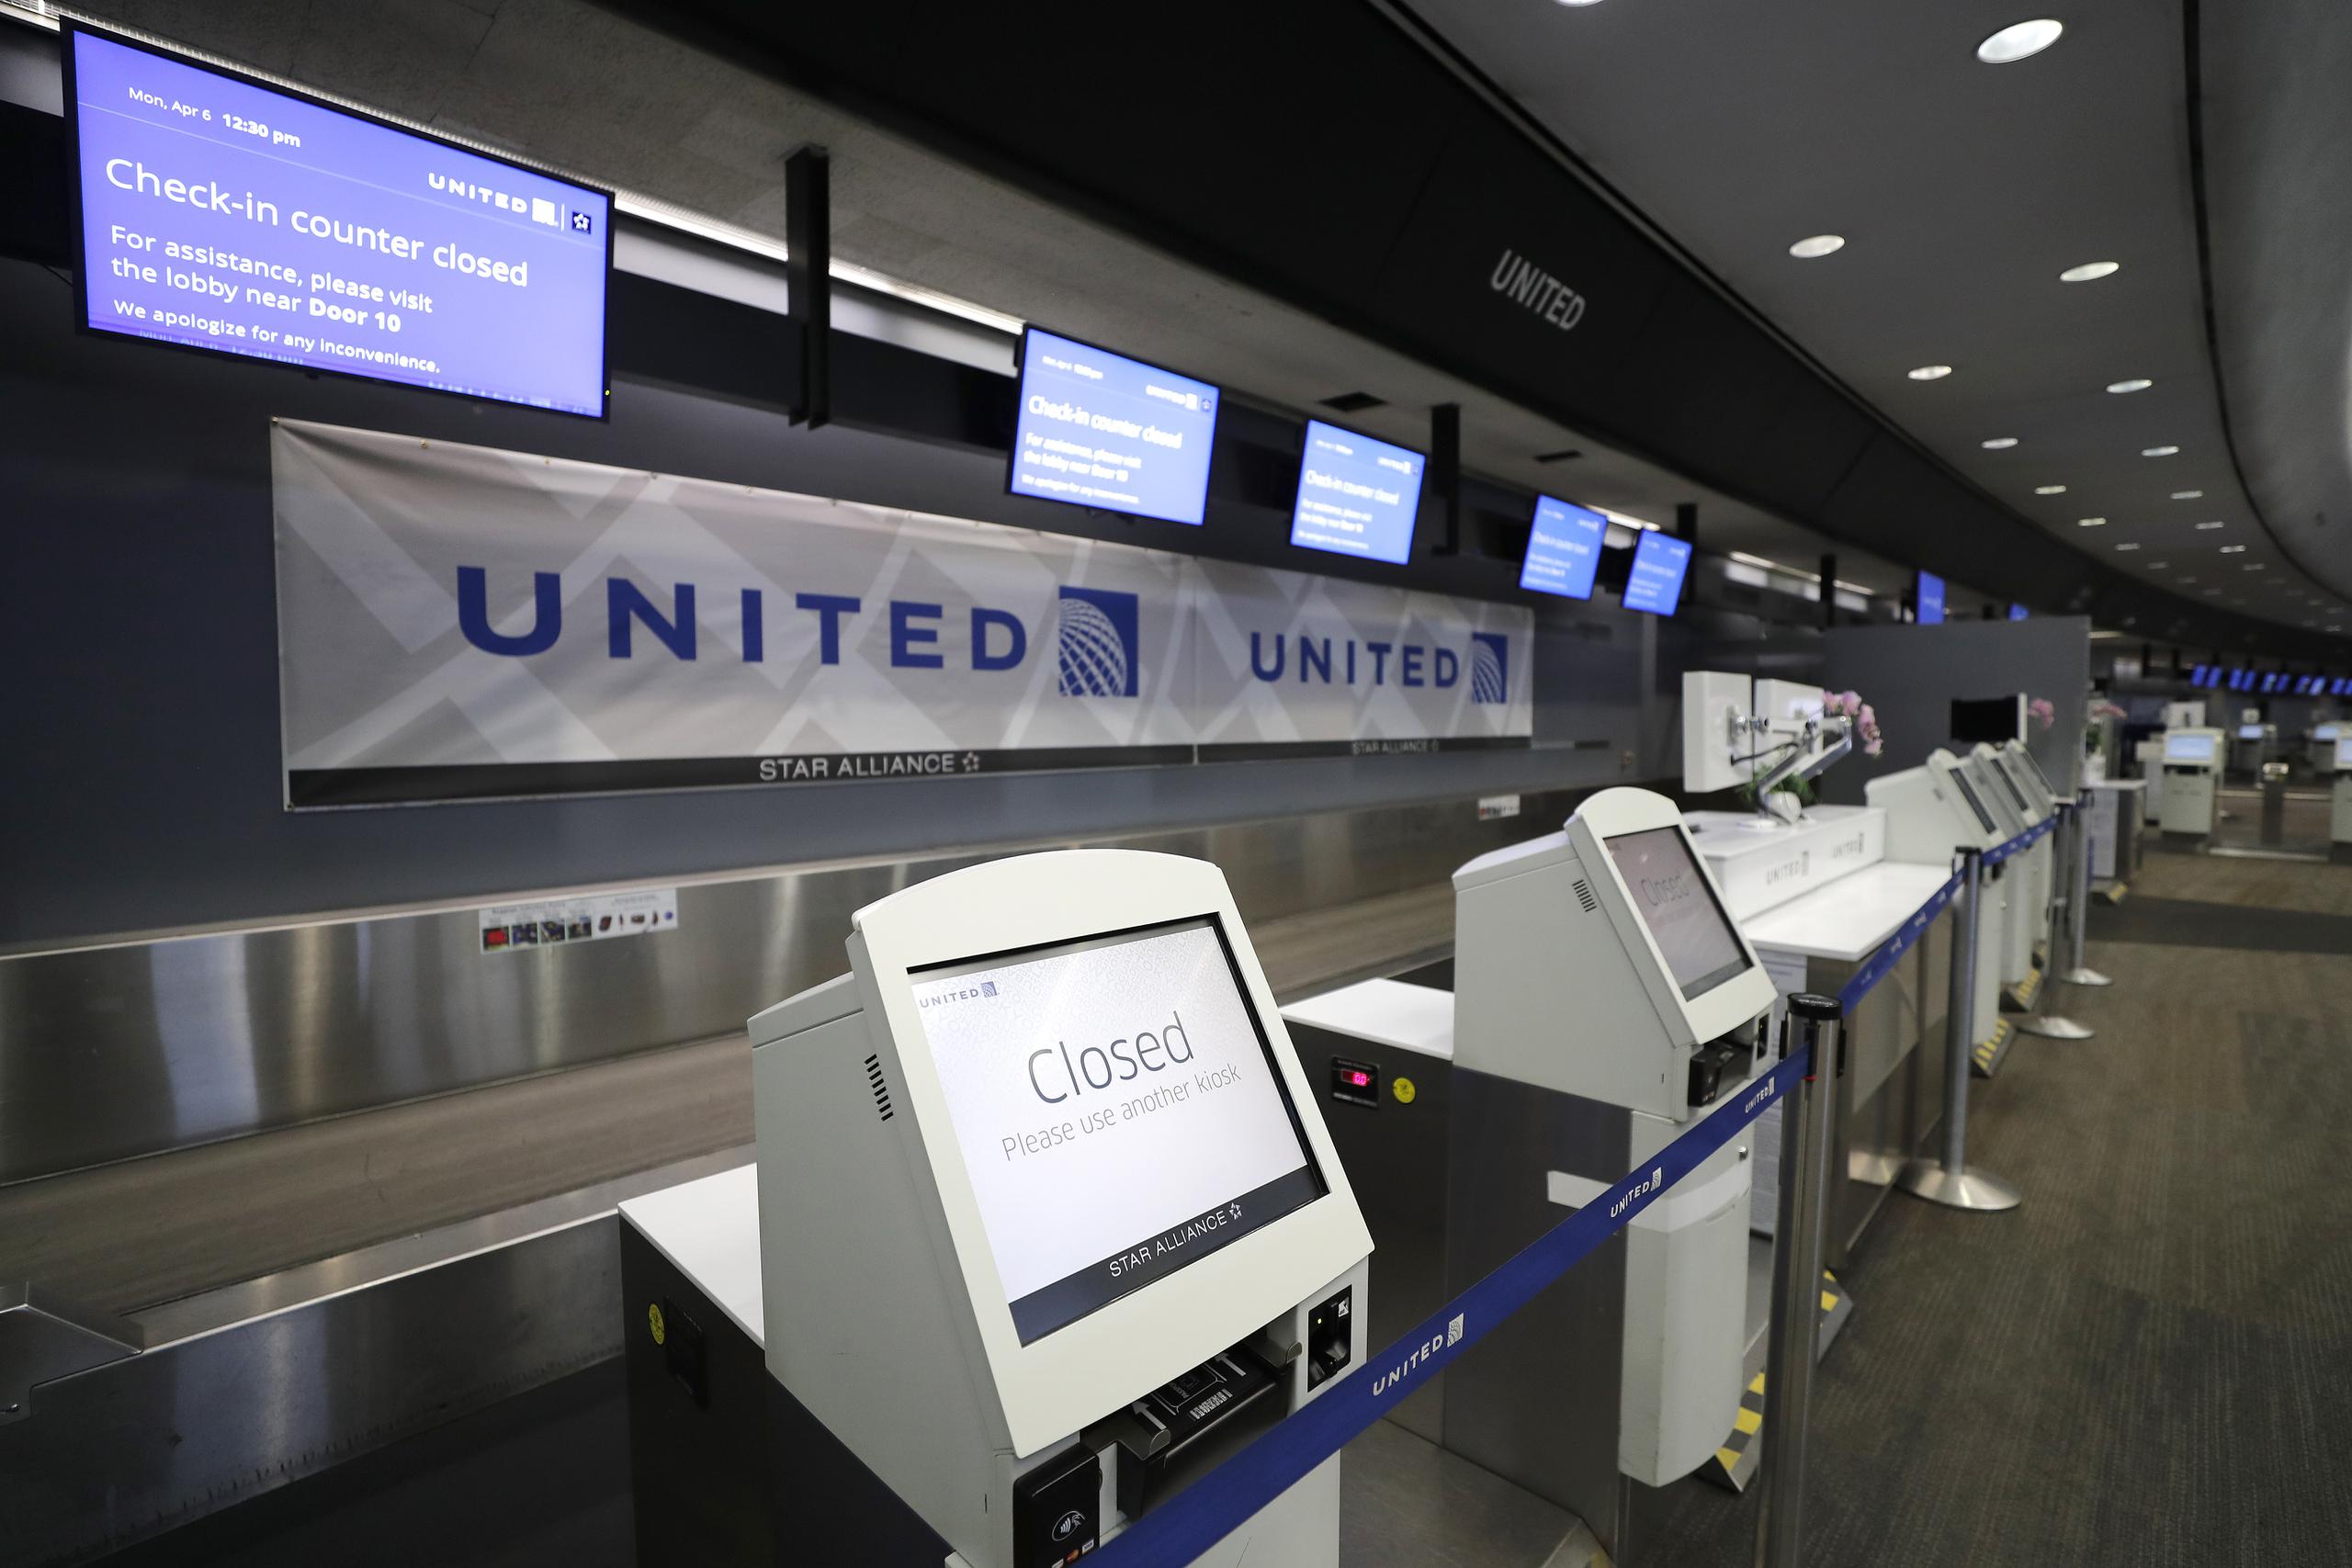 United Airlines definió la suspensión de los empleados como su “último recurso” para mantener la viabilidad.